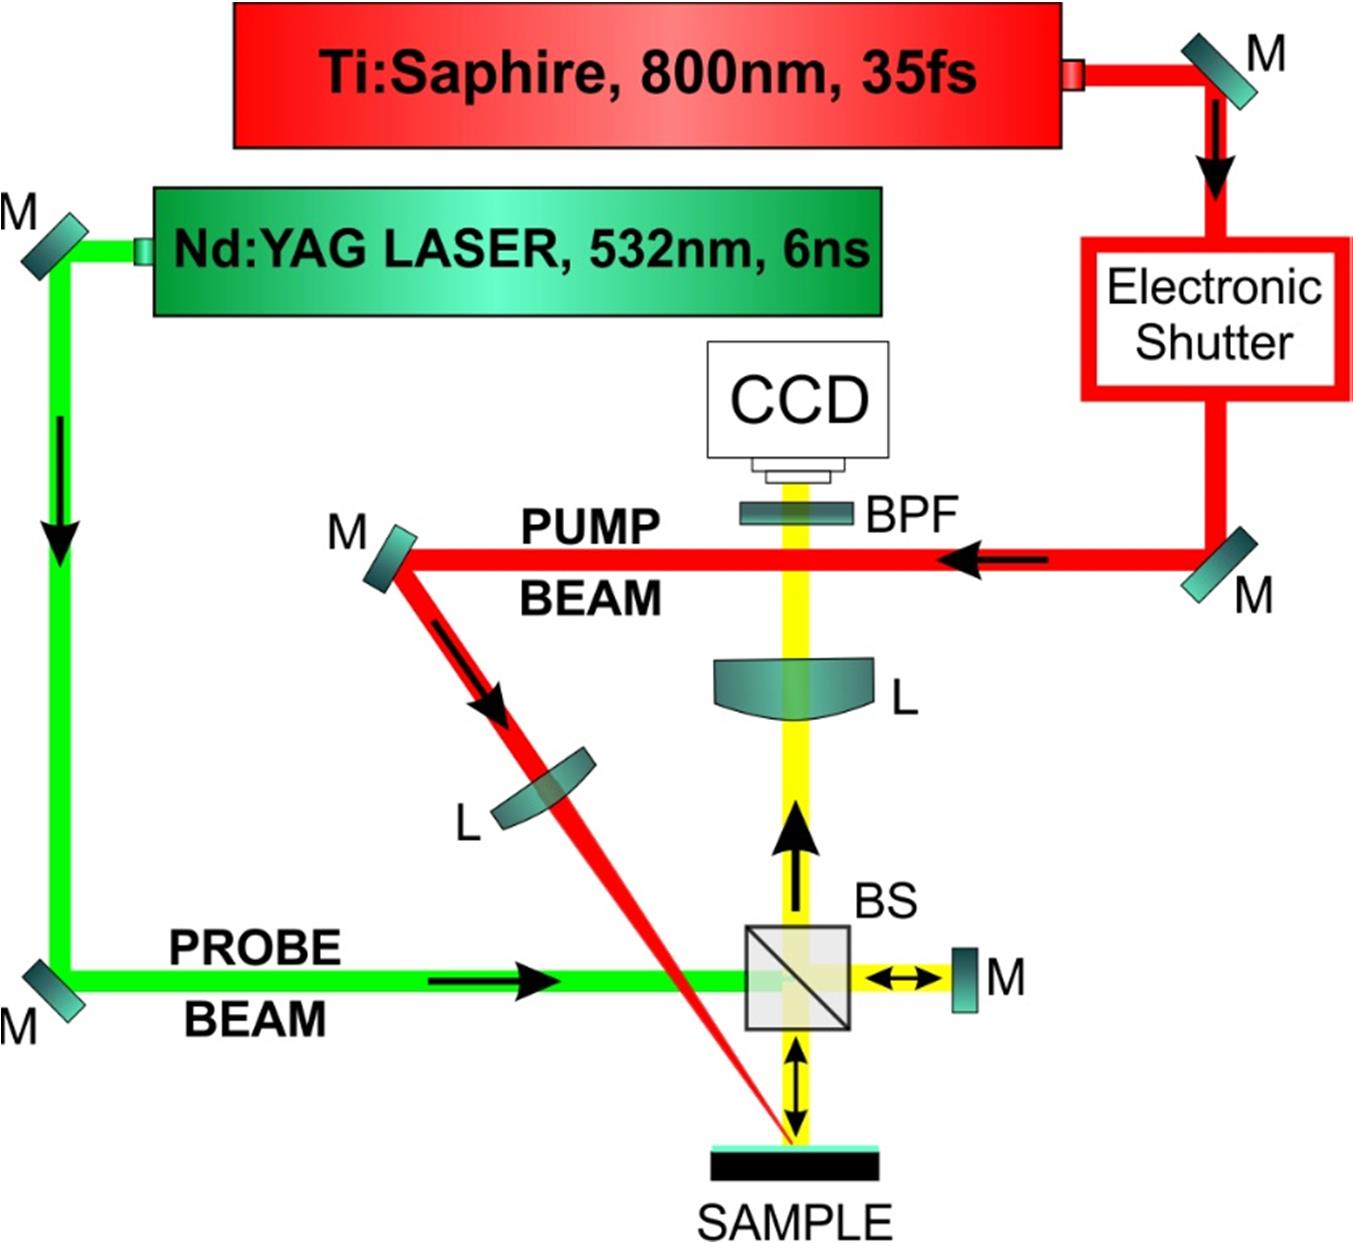 Παραγωγή SAWs fs laser ανίχνευση με ns laser Συγχρονισμός των δύο